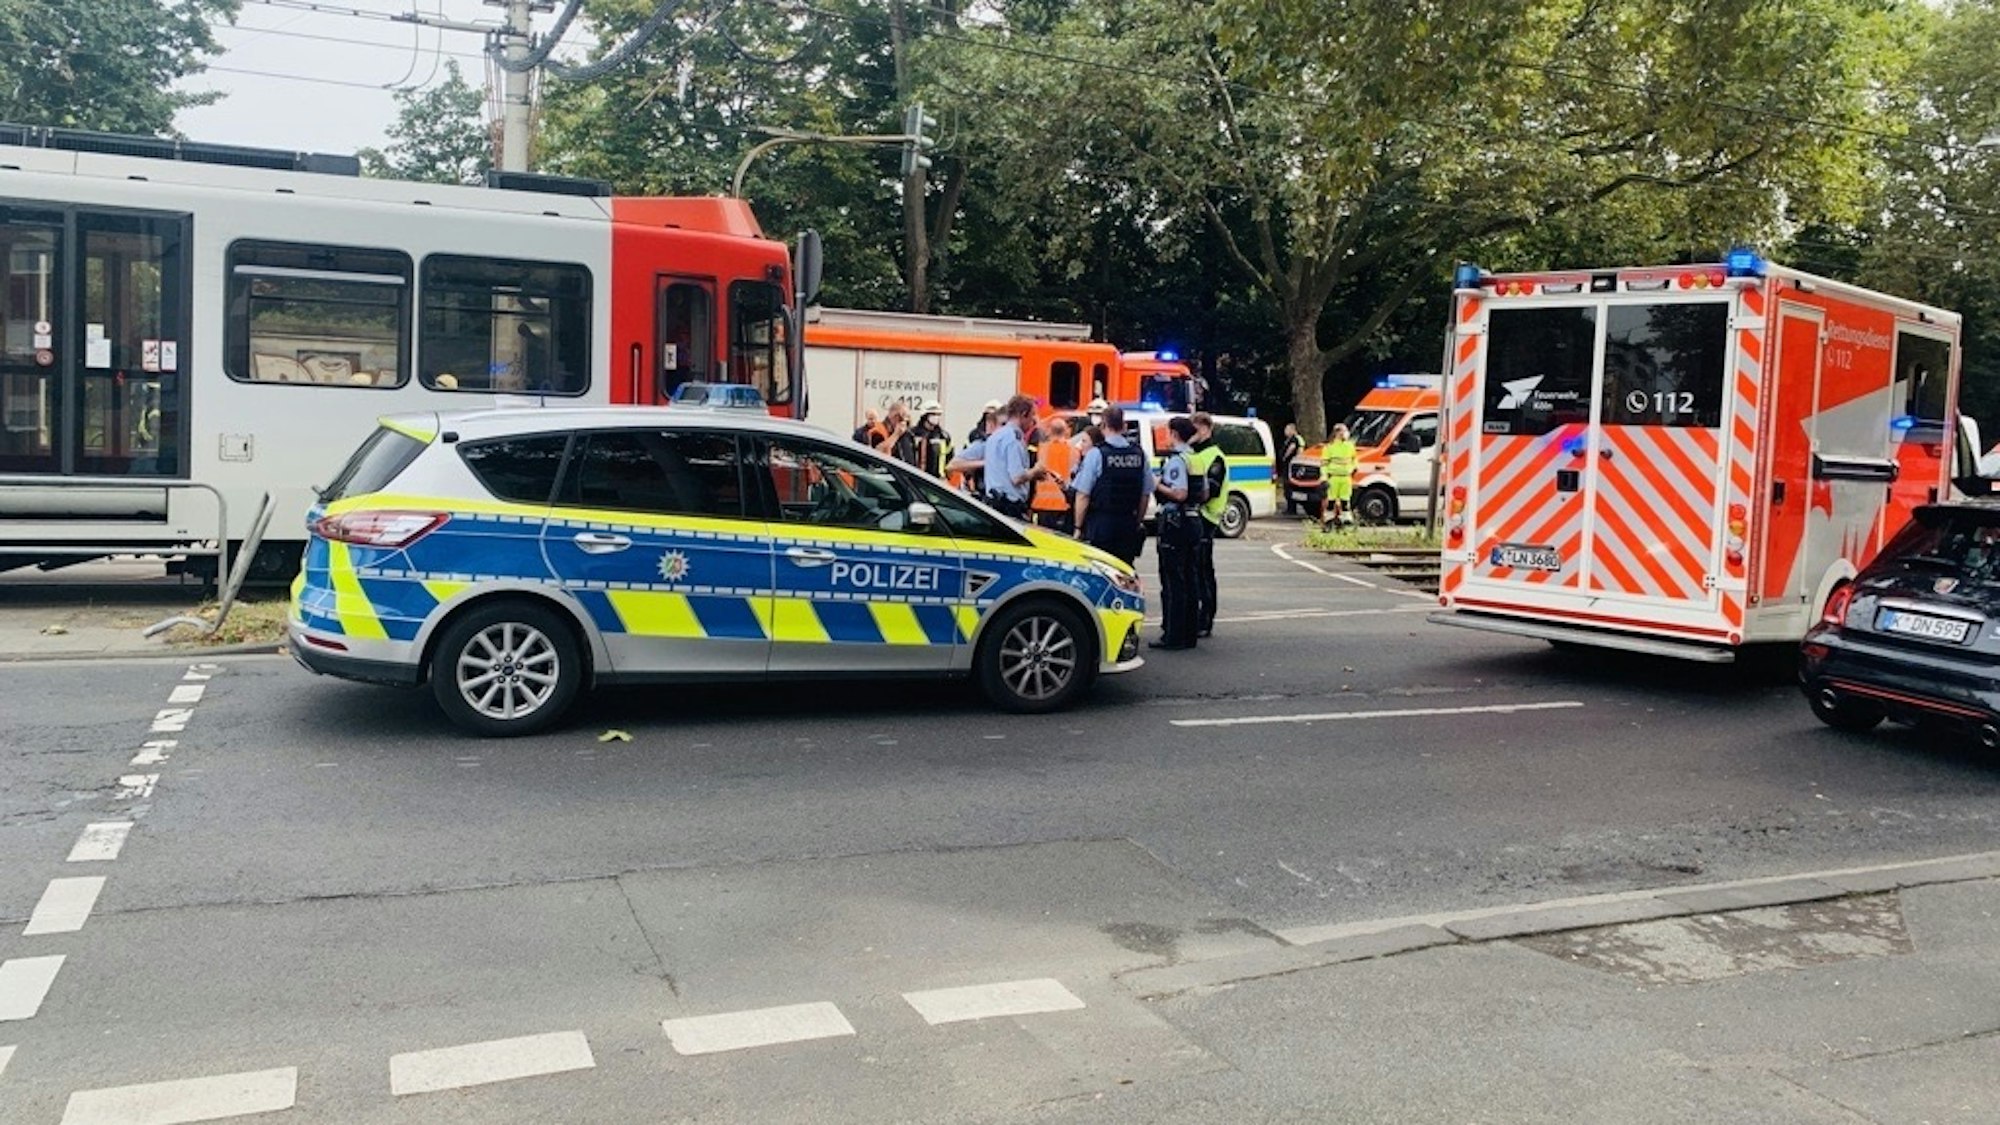 Einsatzfahrzeuge von Polizei, Feuerwehr und Rettungsdienst stehen auf der Straße, außerdem ein Pulk von Einsatzkräften. Eine Straßenbahn hat gestoppt.